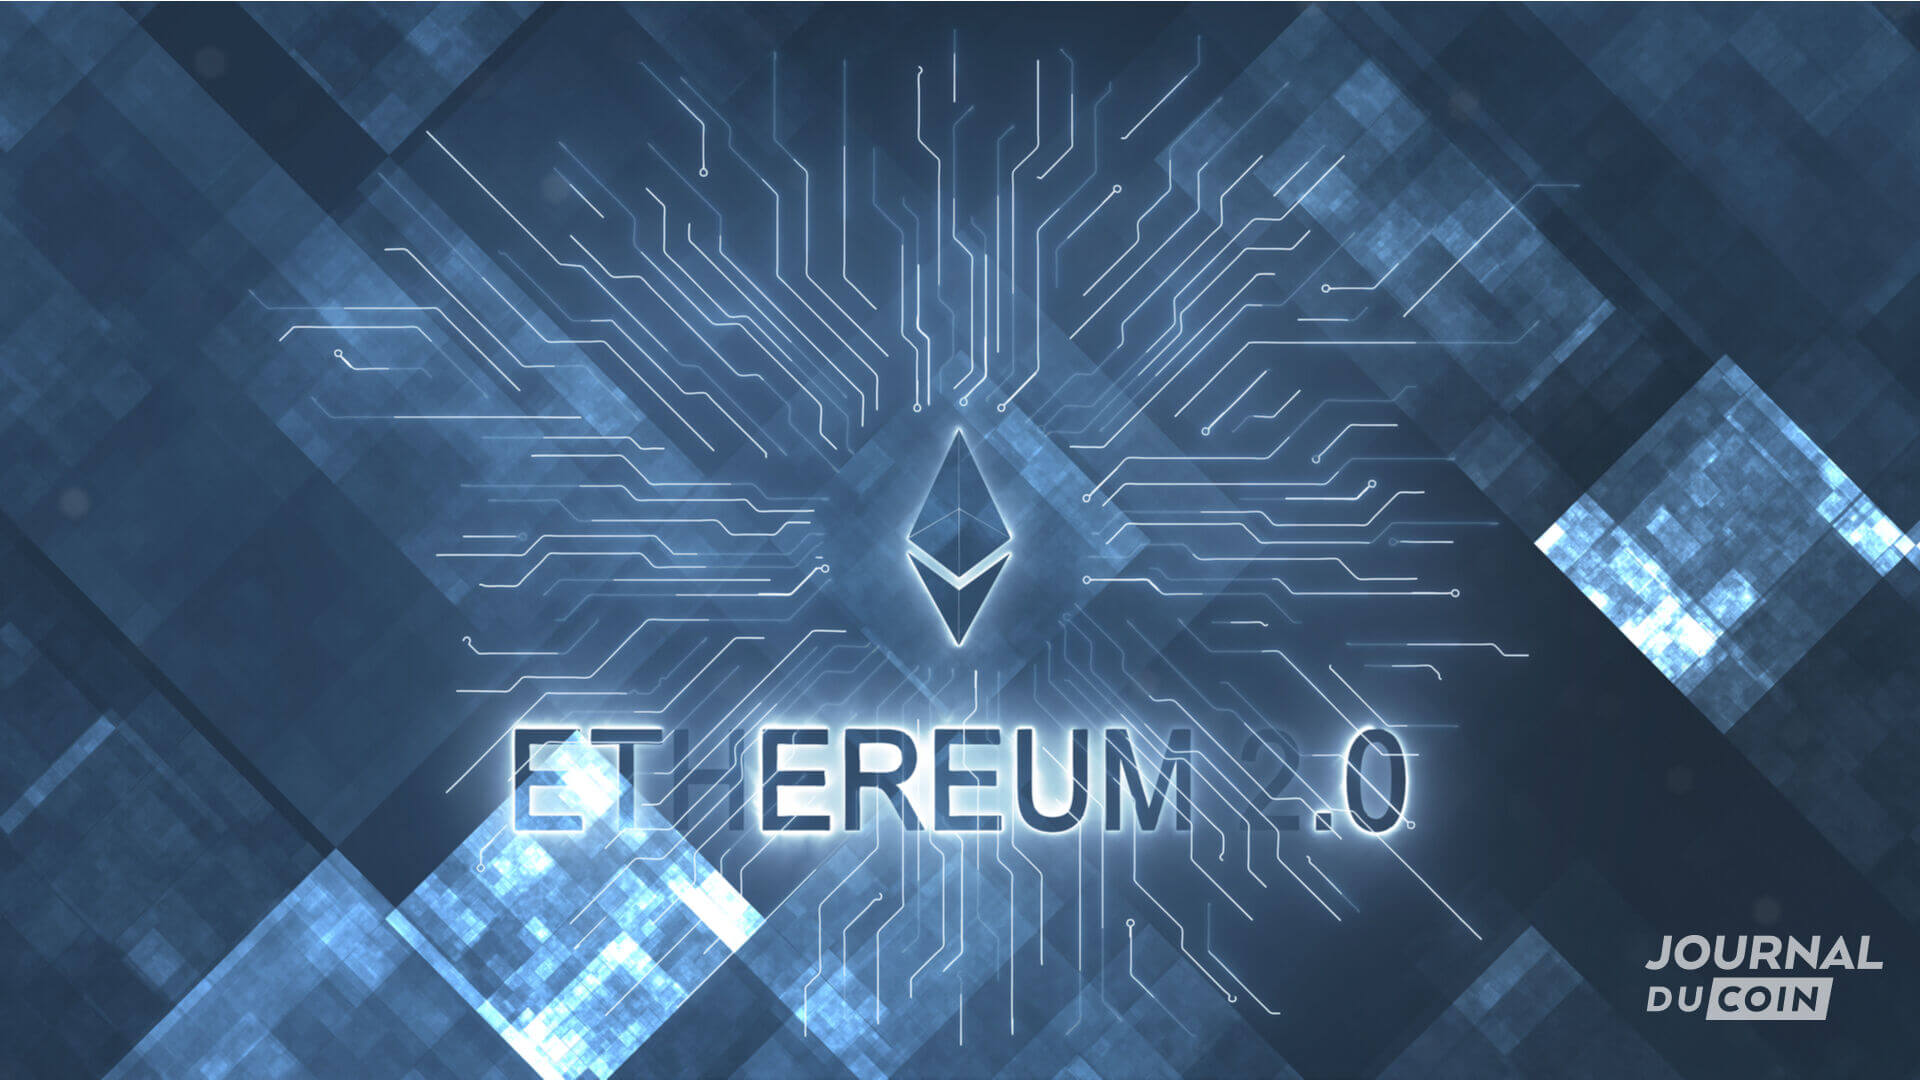 Vue symbolique d'Ethereum 2.0, désormais appelé The Merge.